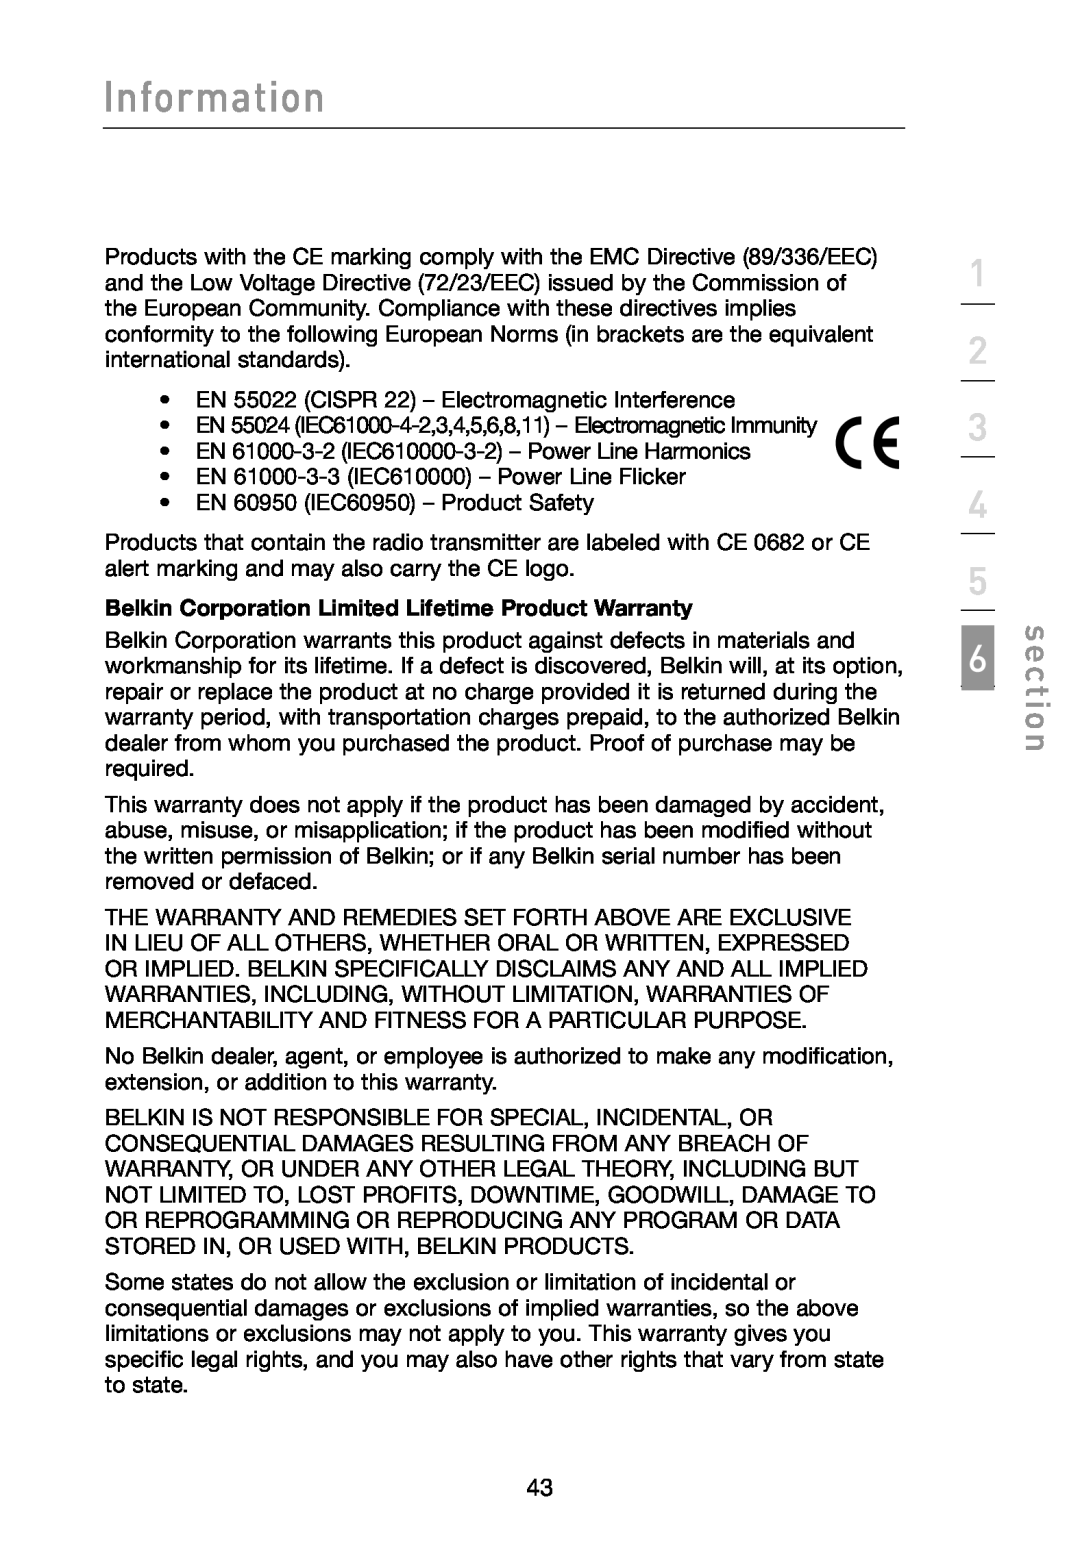 Belkin F6D3000 user manual Information, section, Belkin Corporation Limited Lifetime Product Warranty 